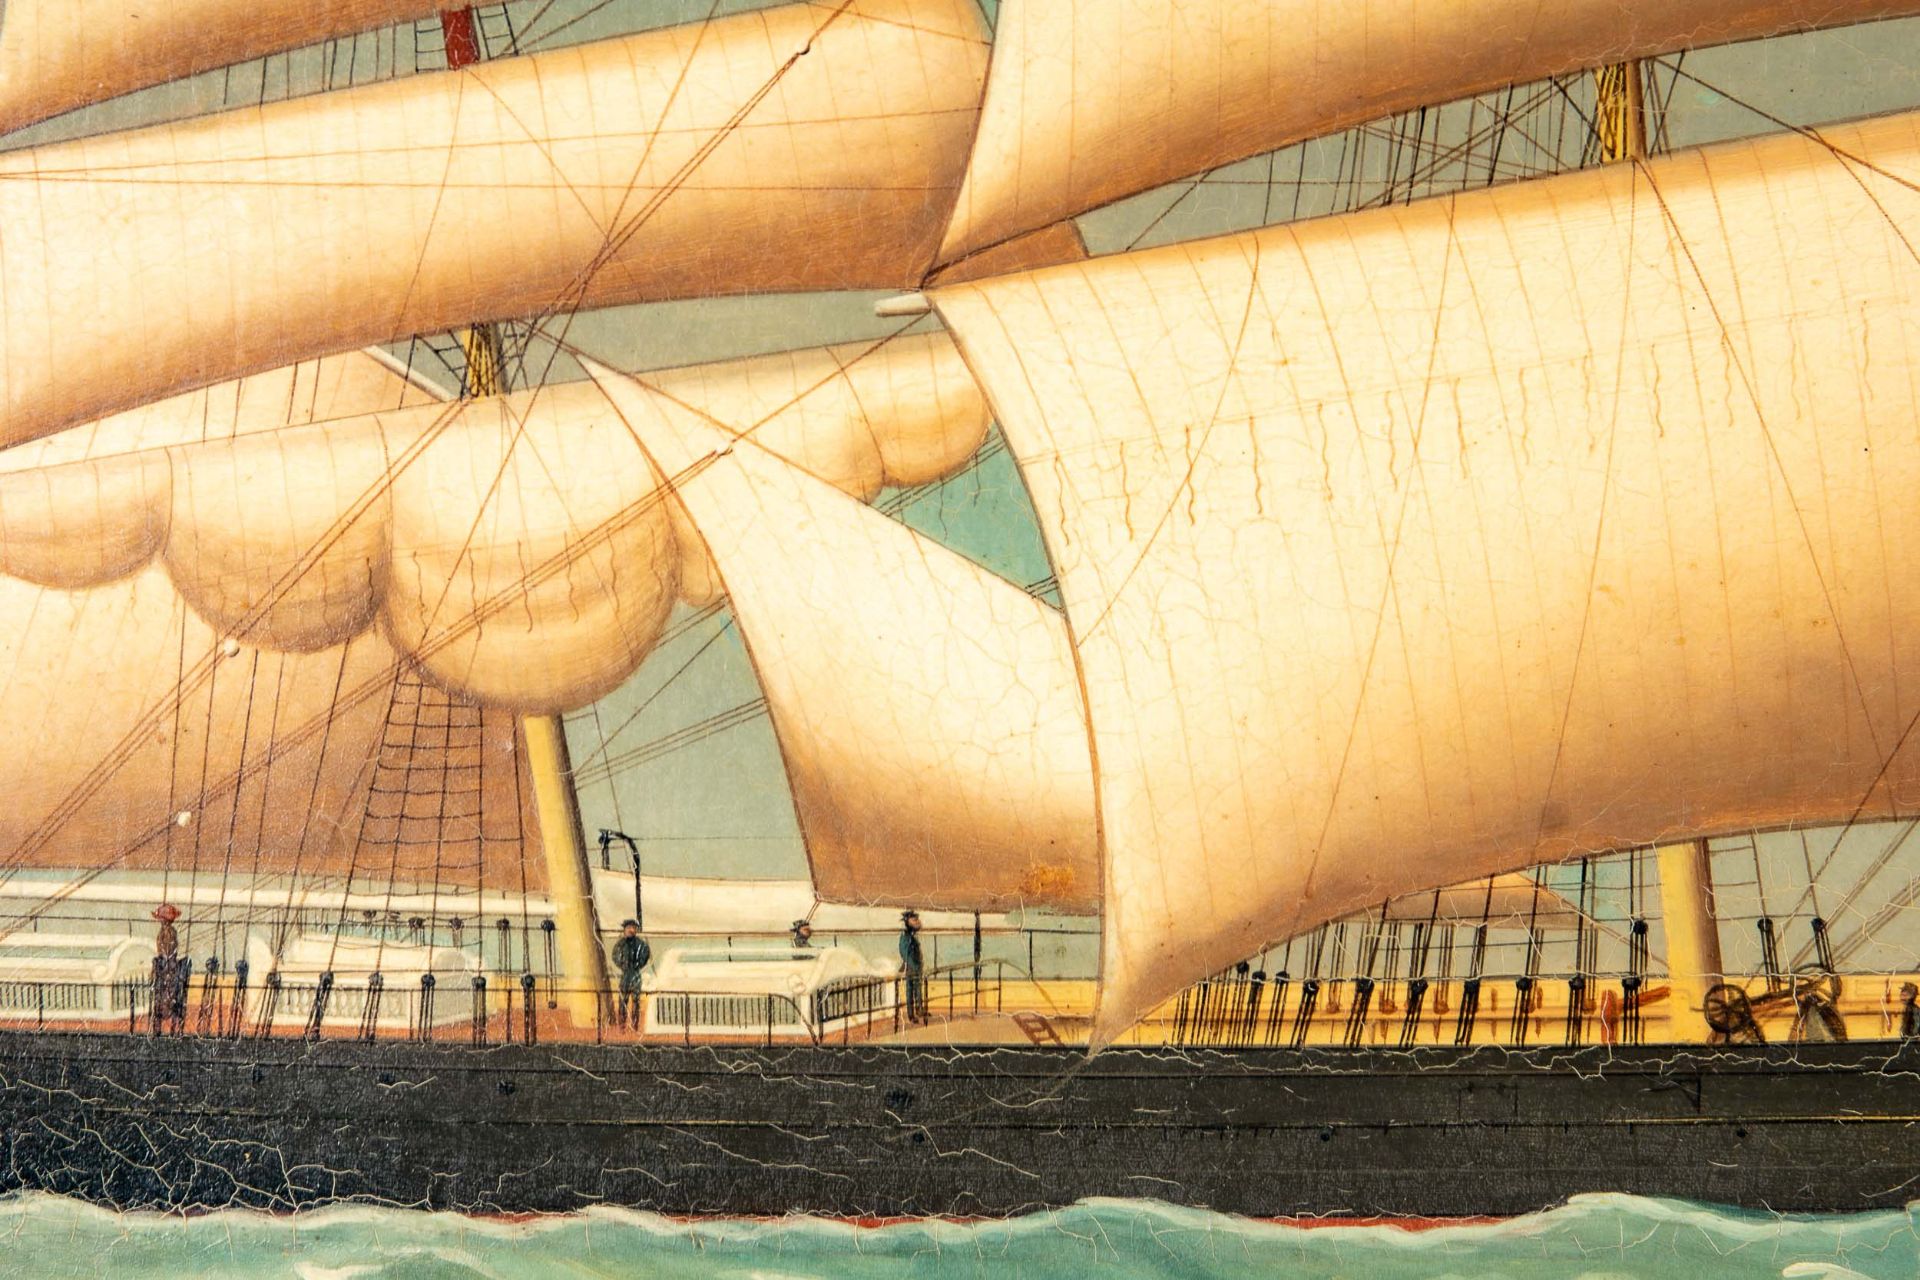 Kapitänsbild des Vollschiffes "Industrie" (1872 in Holland gebaut), qualitativ hochwertiges Gemälde - Image 6 of 24